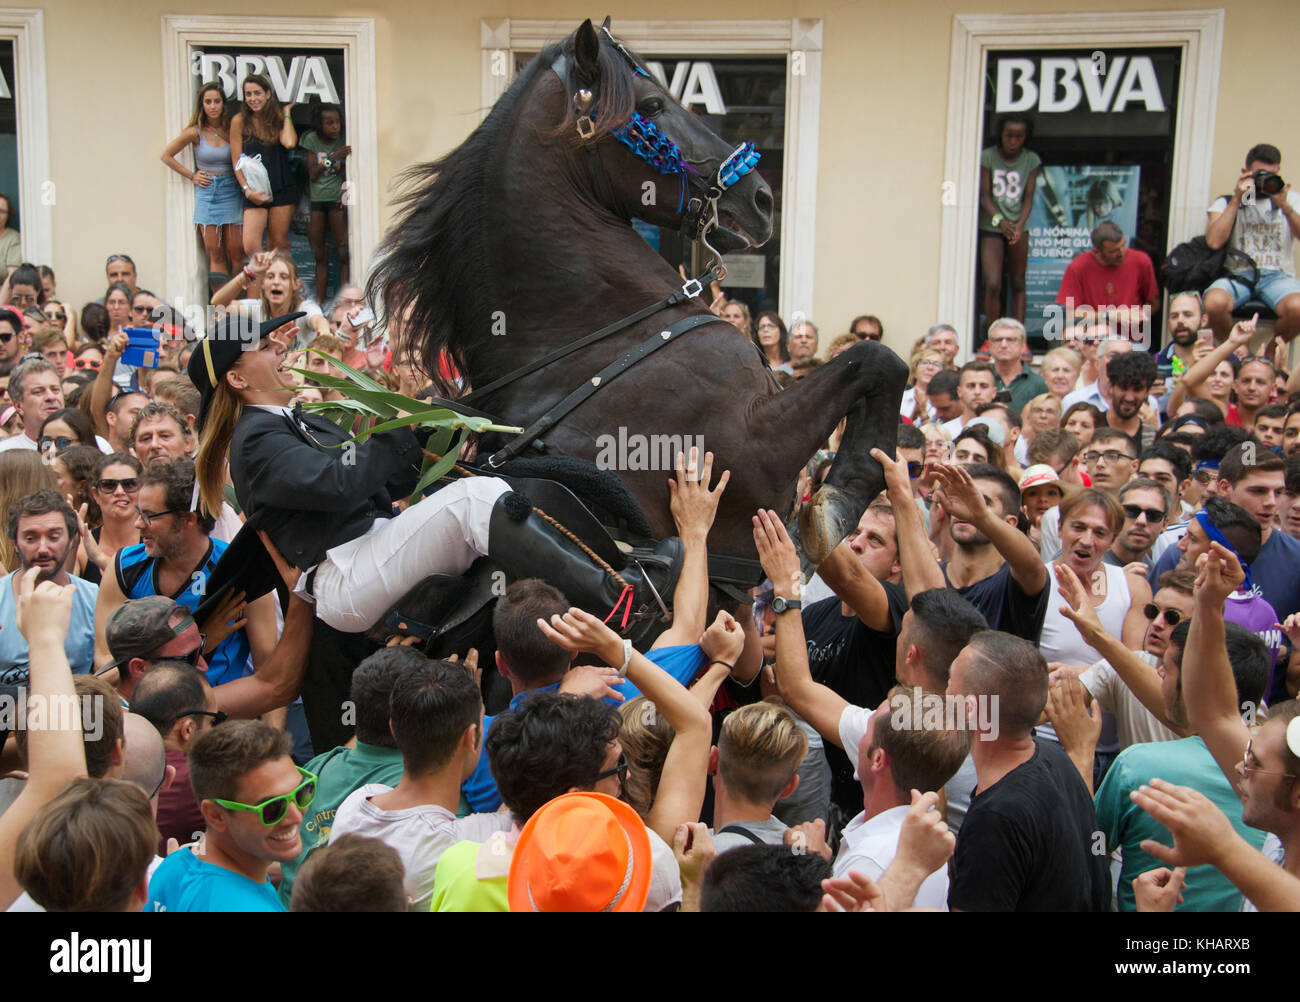 Rider ou femelle ou Caixer avec cheval élevage célèbre finale Mare de Déu de Gràcia Constituion festival Place Mao Menorca Espagne Banque D'Images